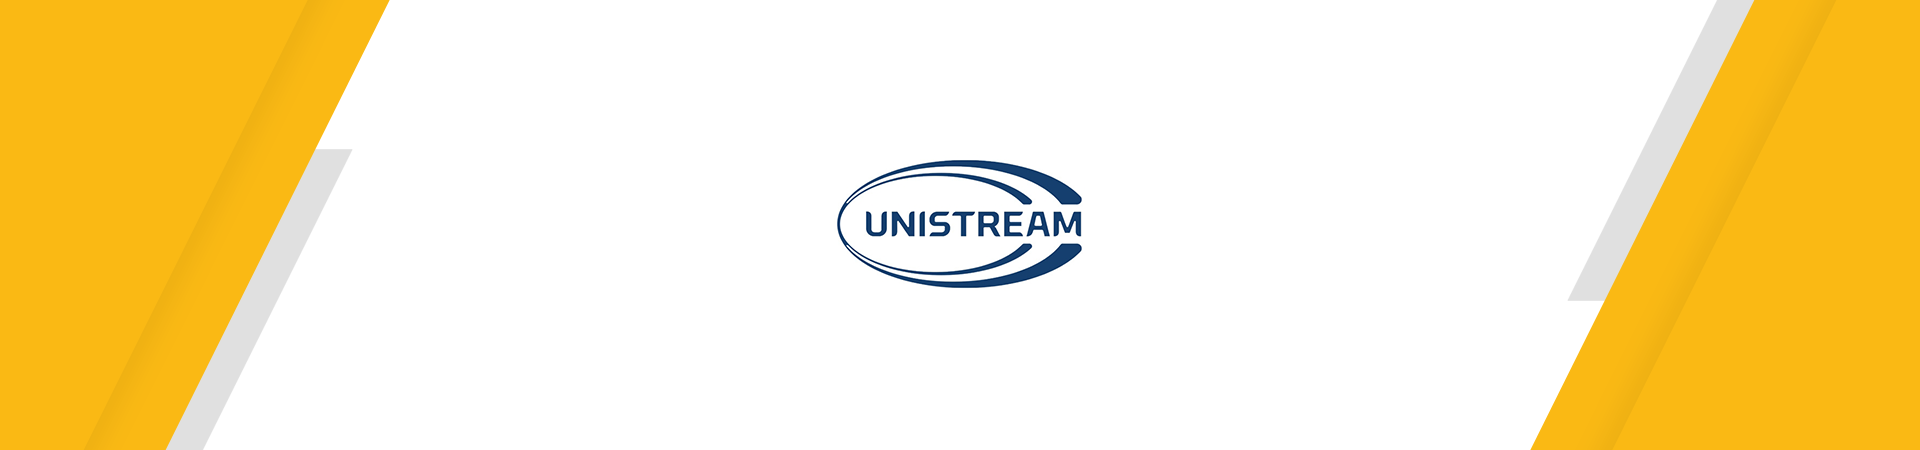 Հեռախոսահամարով փոխանցումների ստացում Unistream բանկից